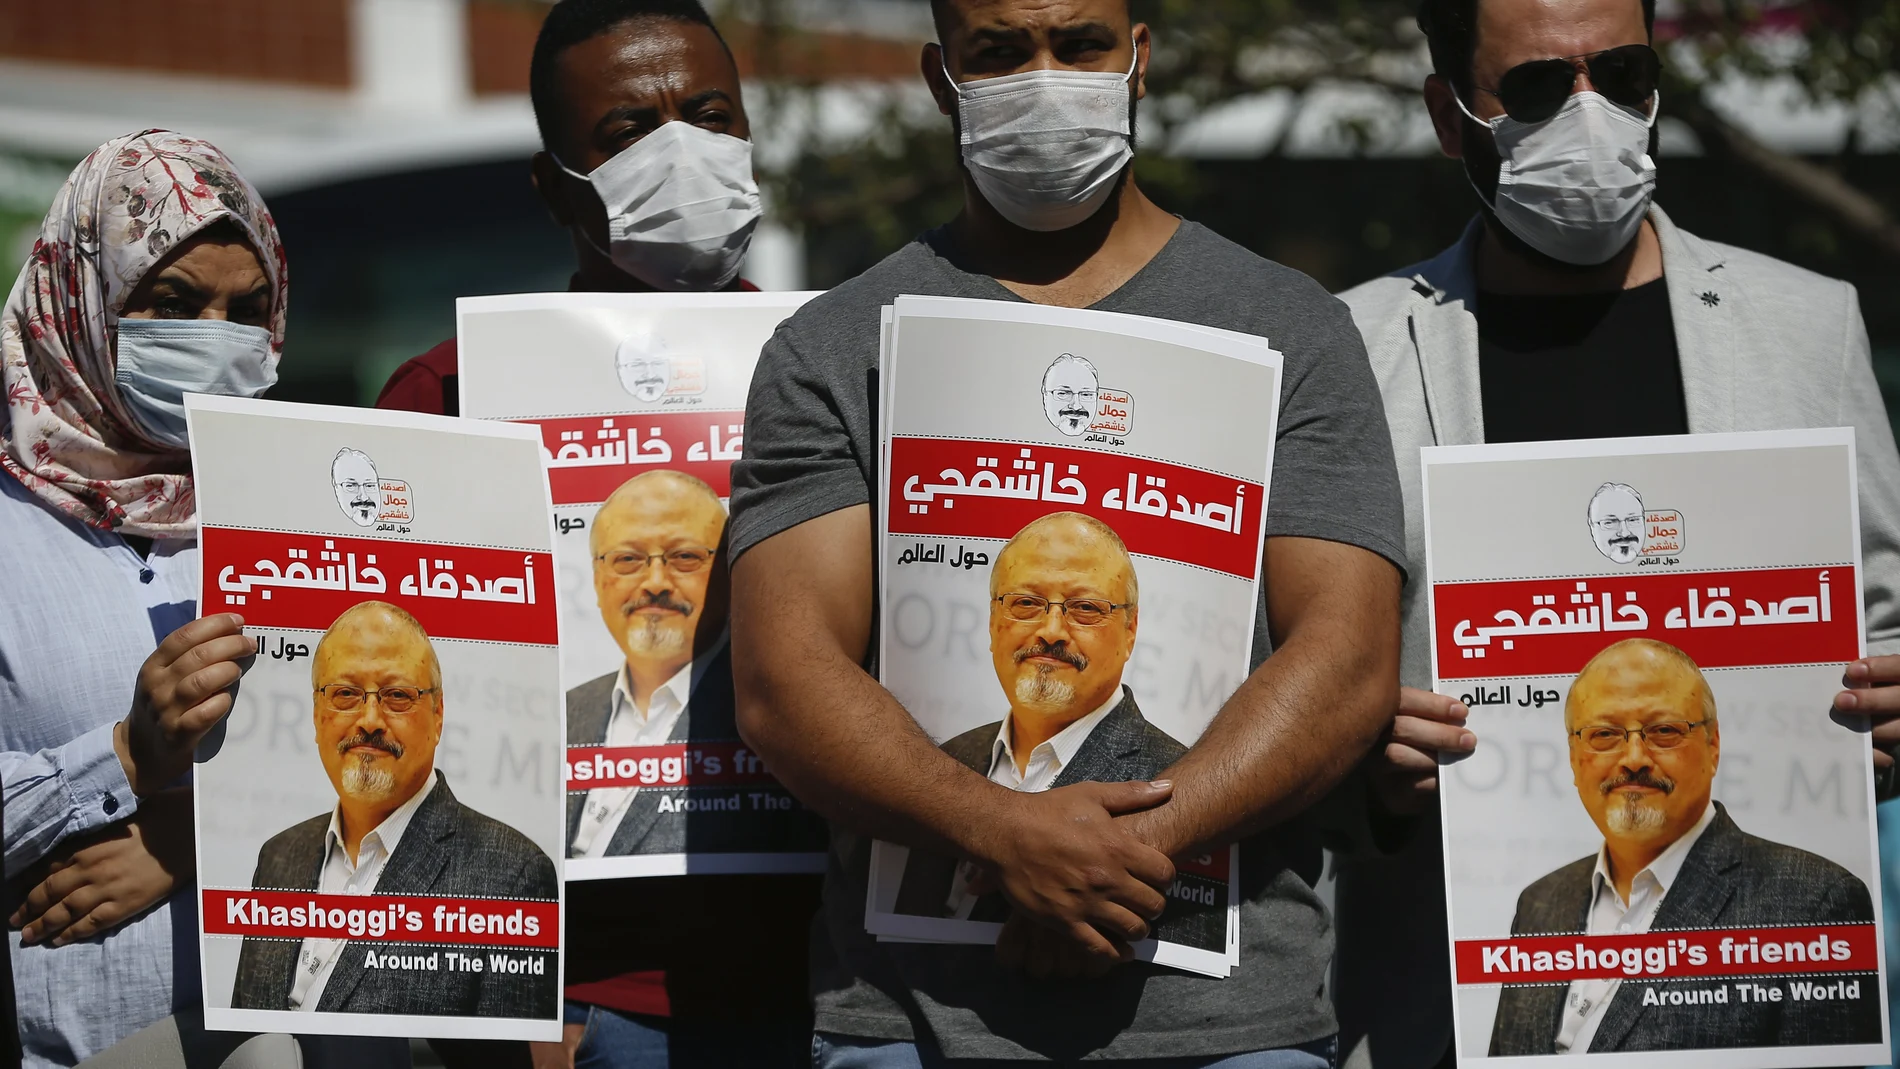 Manefestantes con imágenes del periodista asesinado Jamal Khashoggi frente al consulado saudí en Estambul